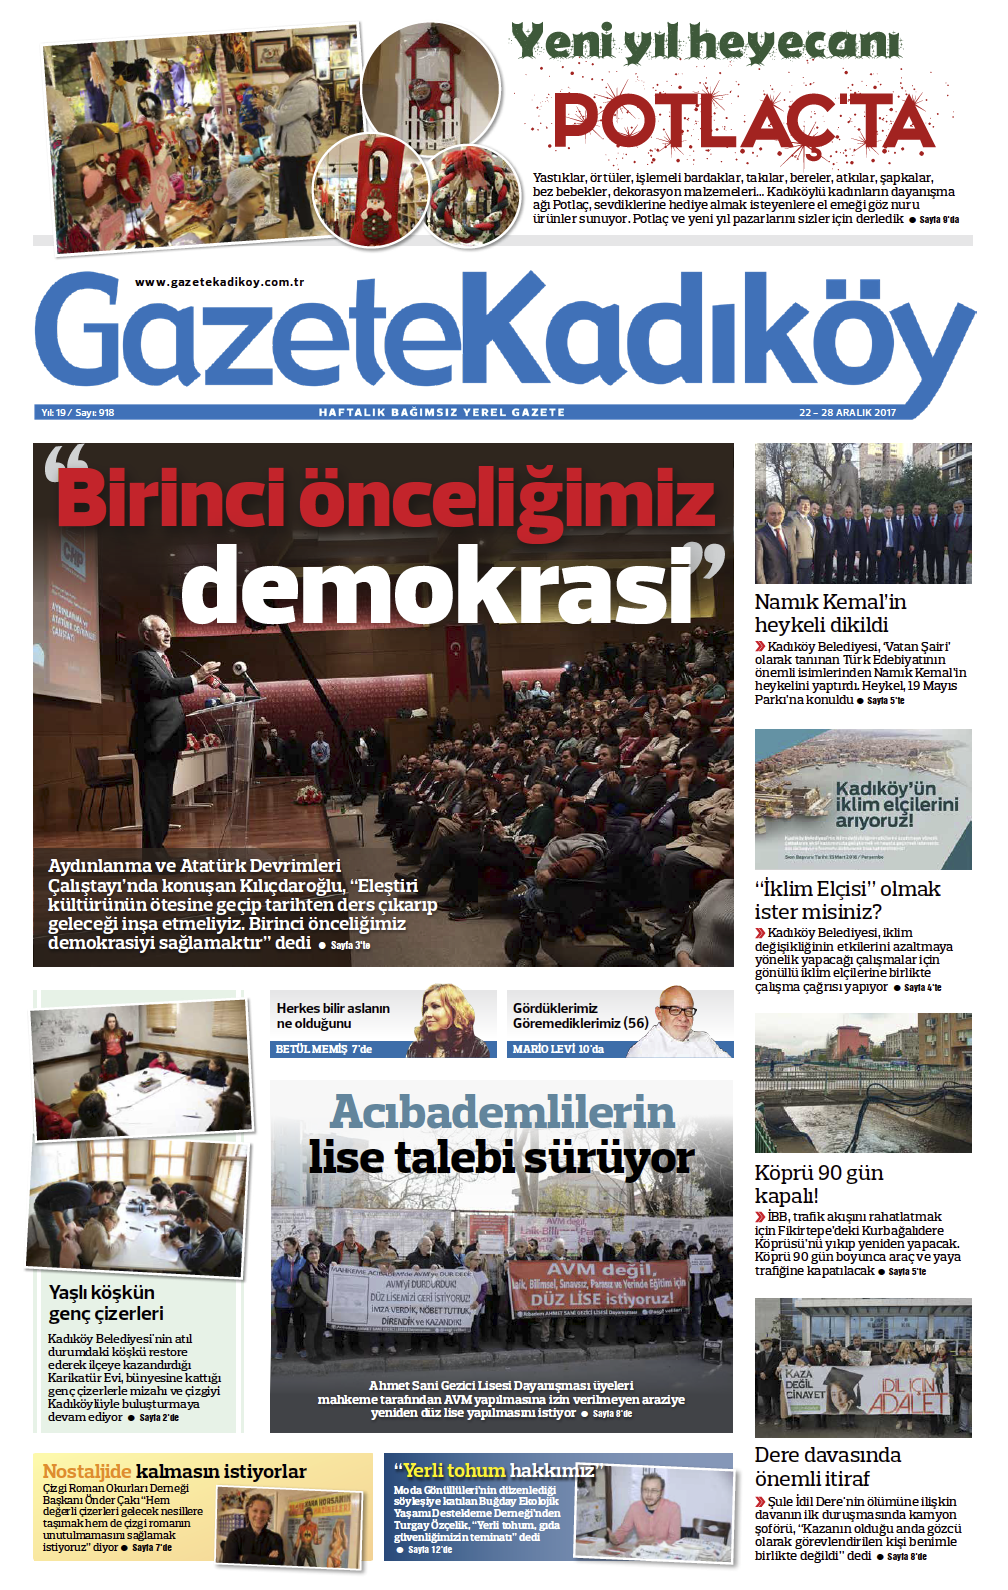 Gazete Kadıköy - 918. SAYI